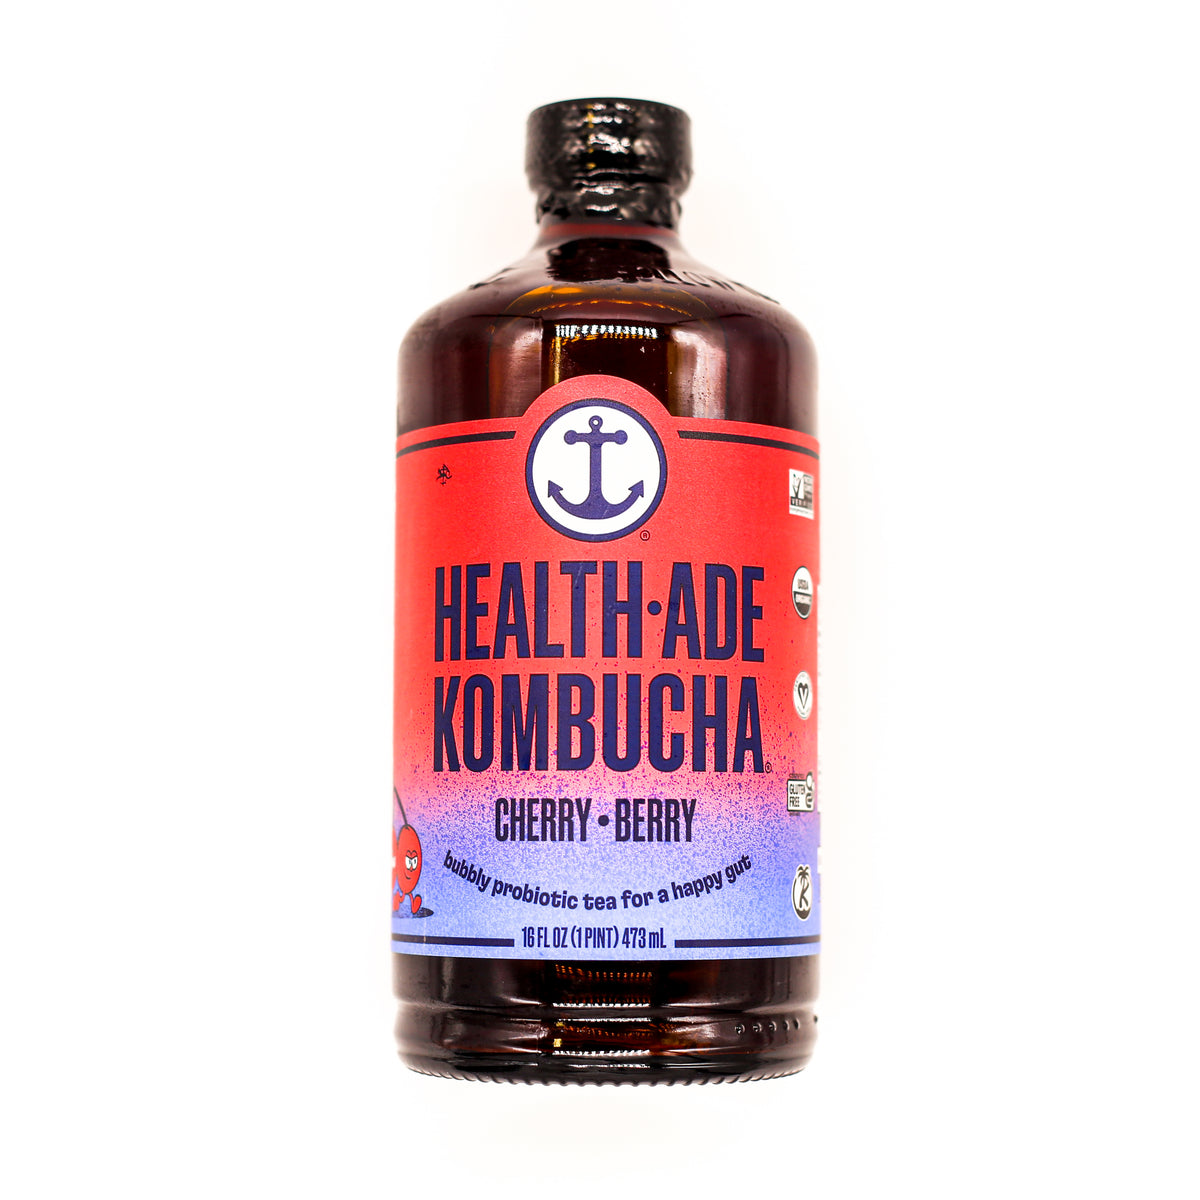 Health Ade Kombucha Cherry Berry